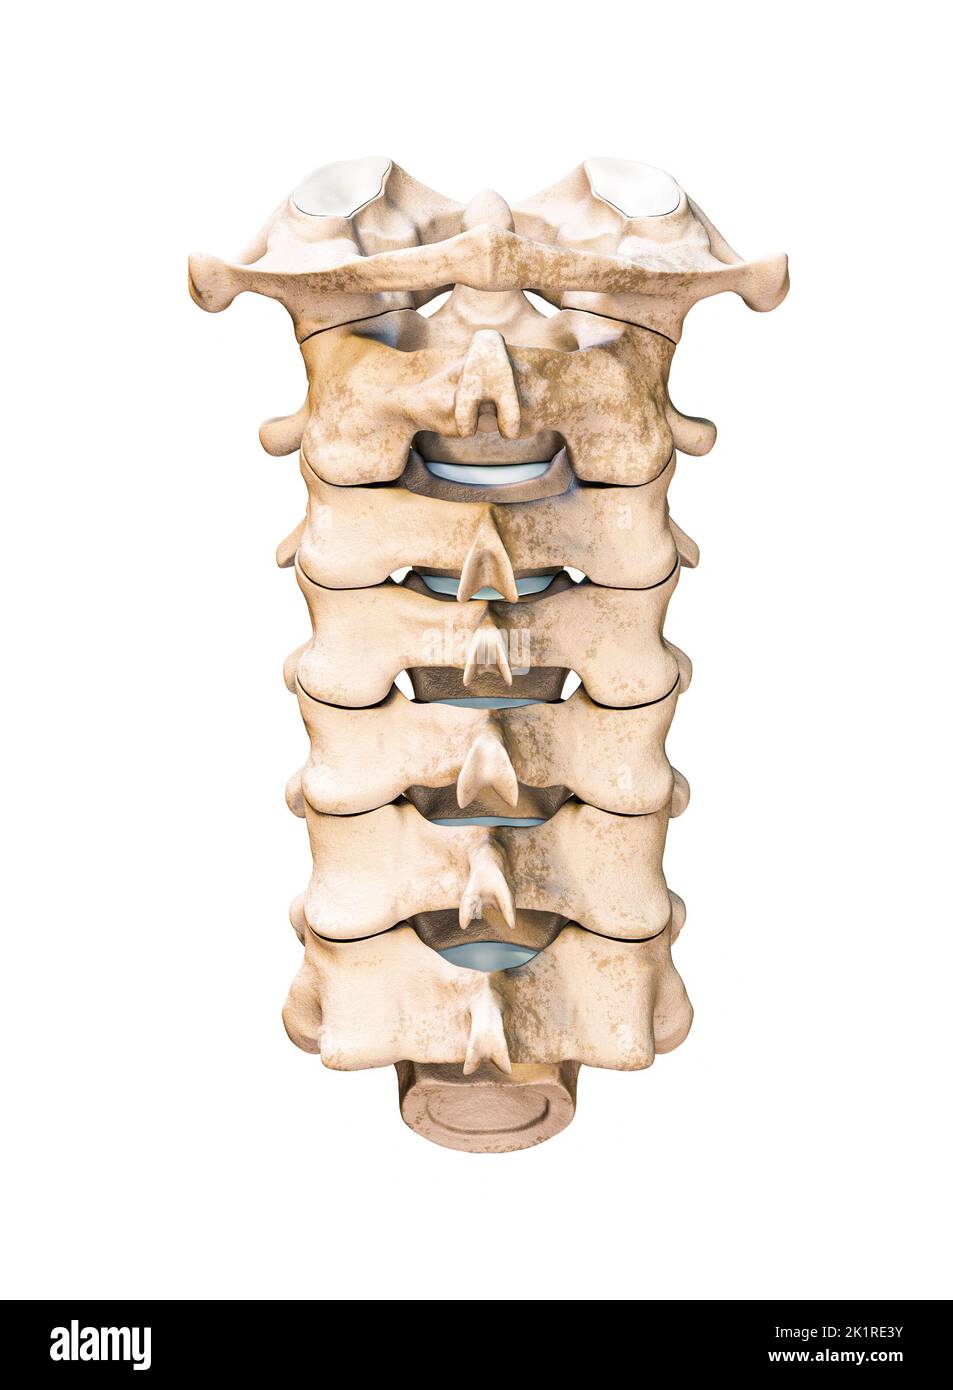 Vista posterior o posterior o posterior de las siete vértebras cervicales humanas aisladas sobre fondo blanco 3D ilustración. Anatomía, osteología, blanco Foto de stock